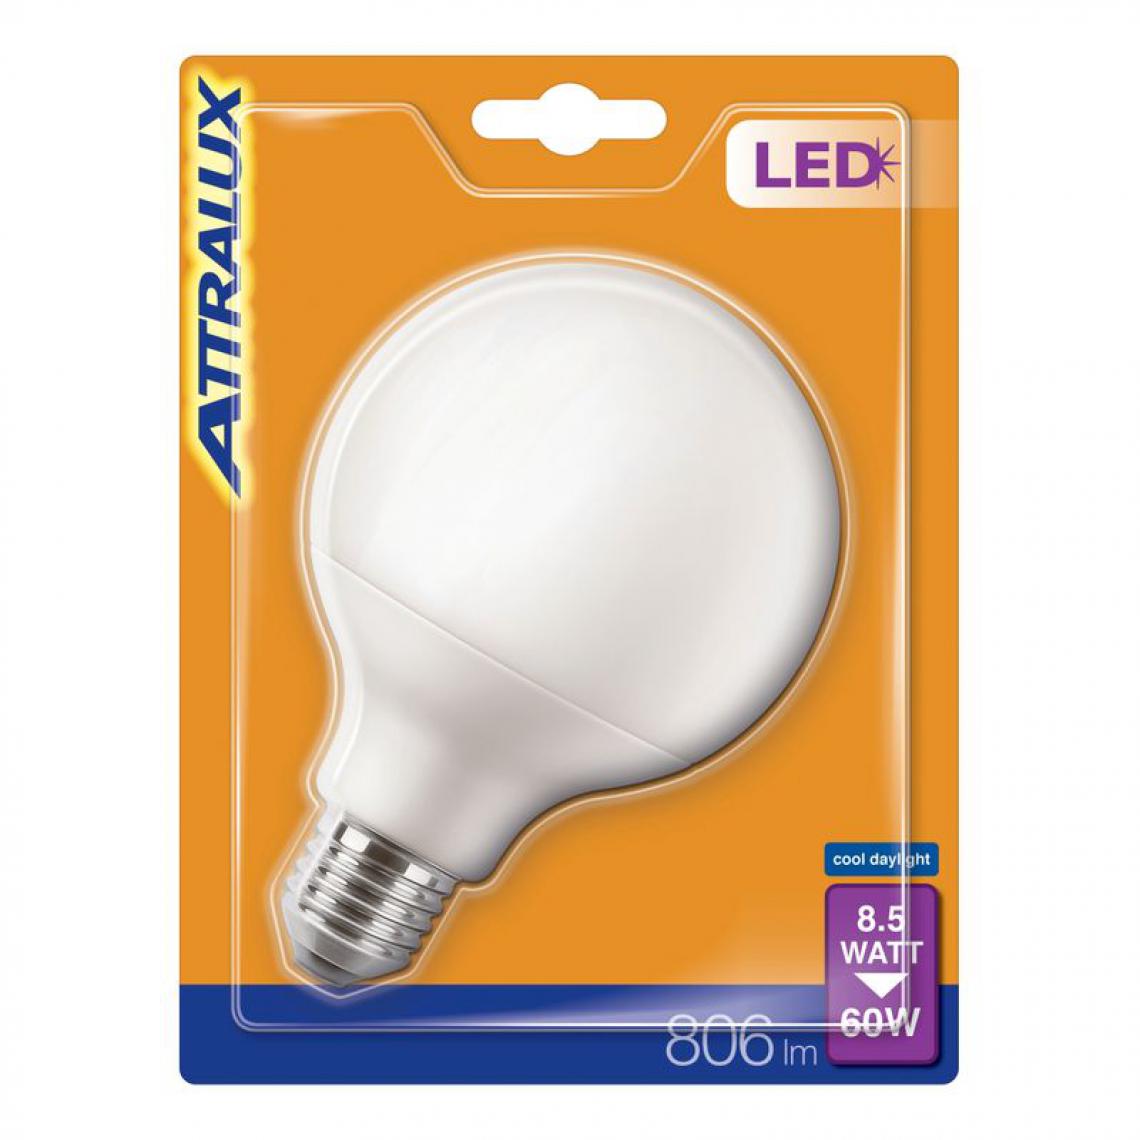 Philips - Ampoule LED 8,5W équiv 60W 806 lm E27 Blanc froid - Ampoules LED